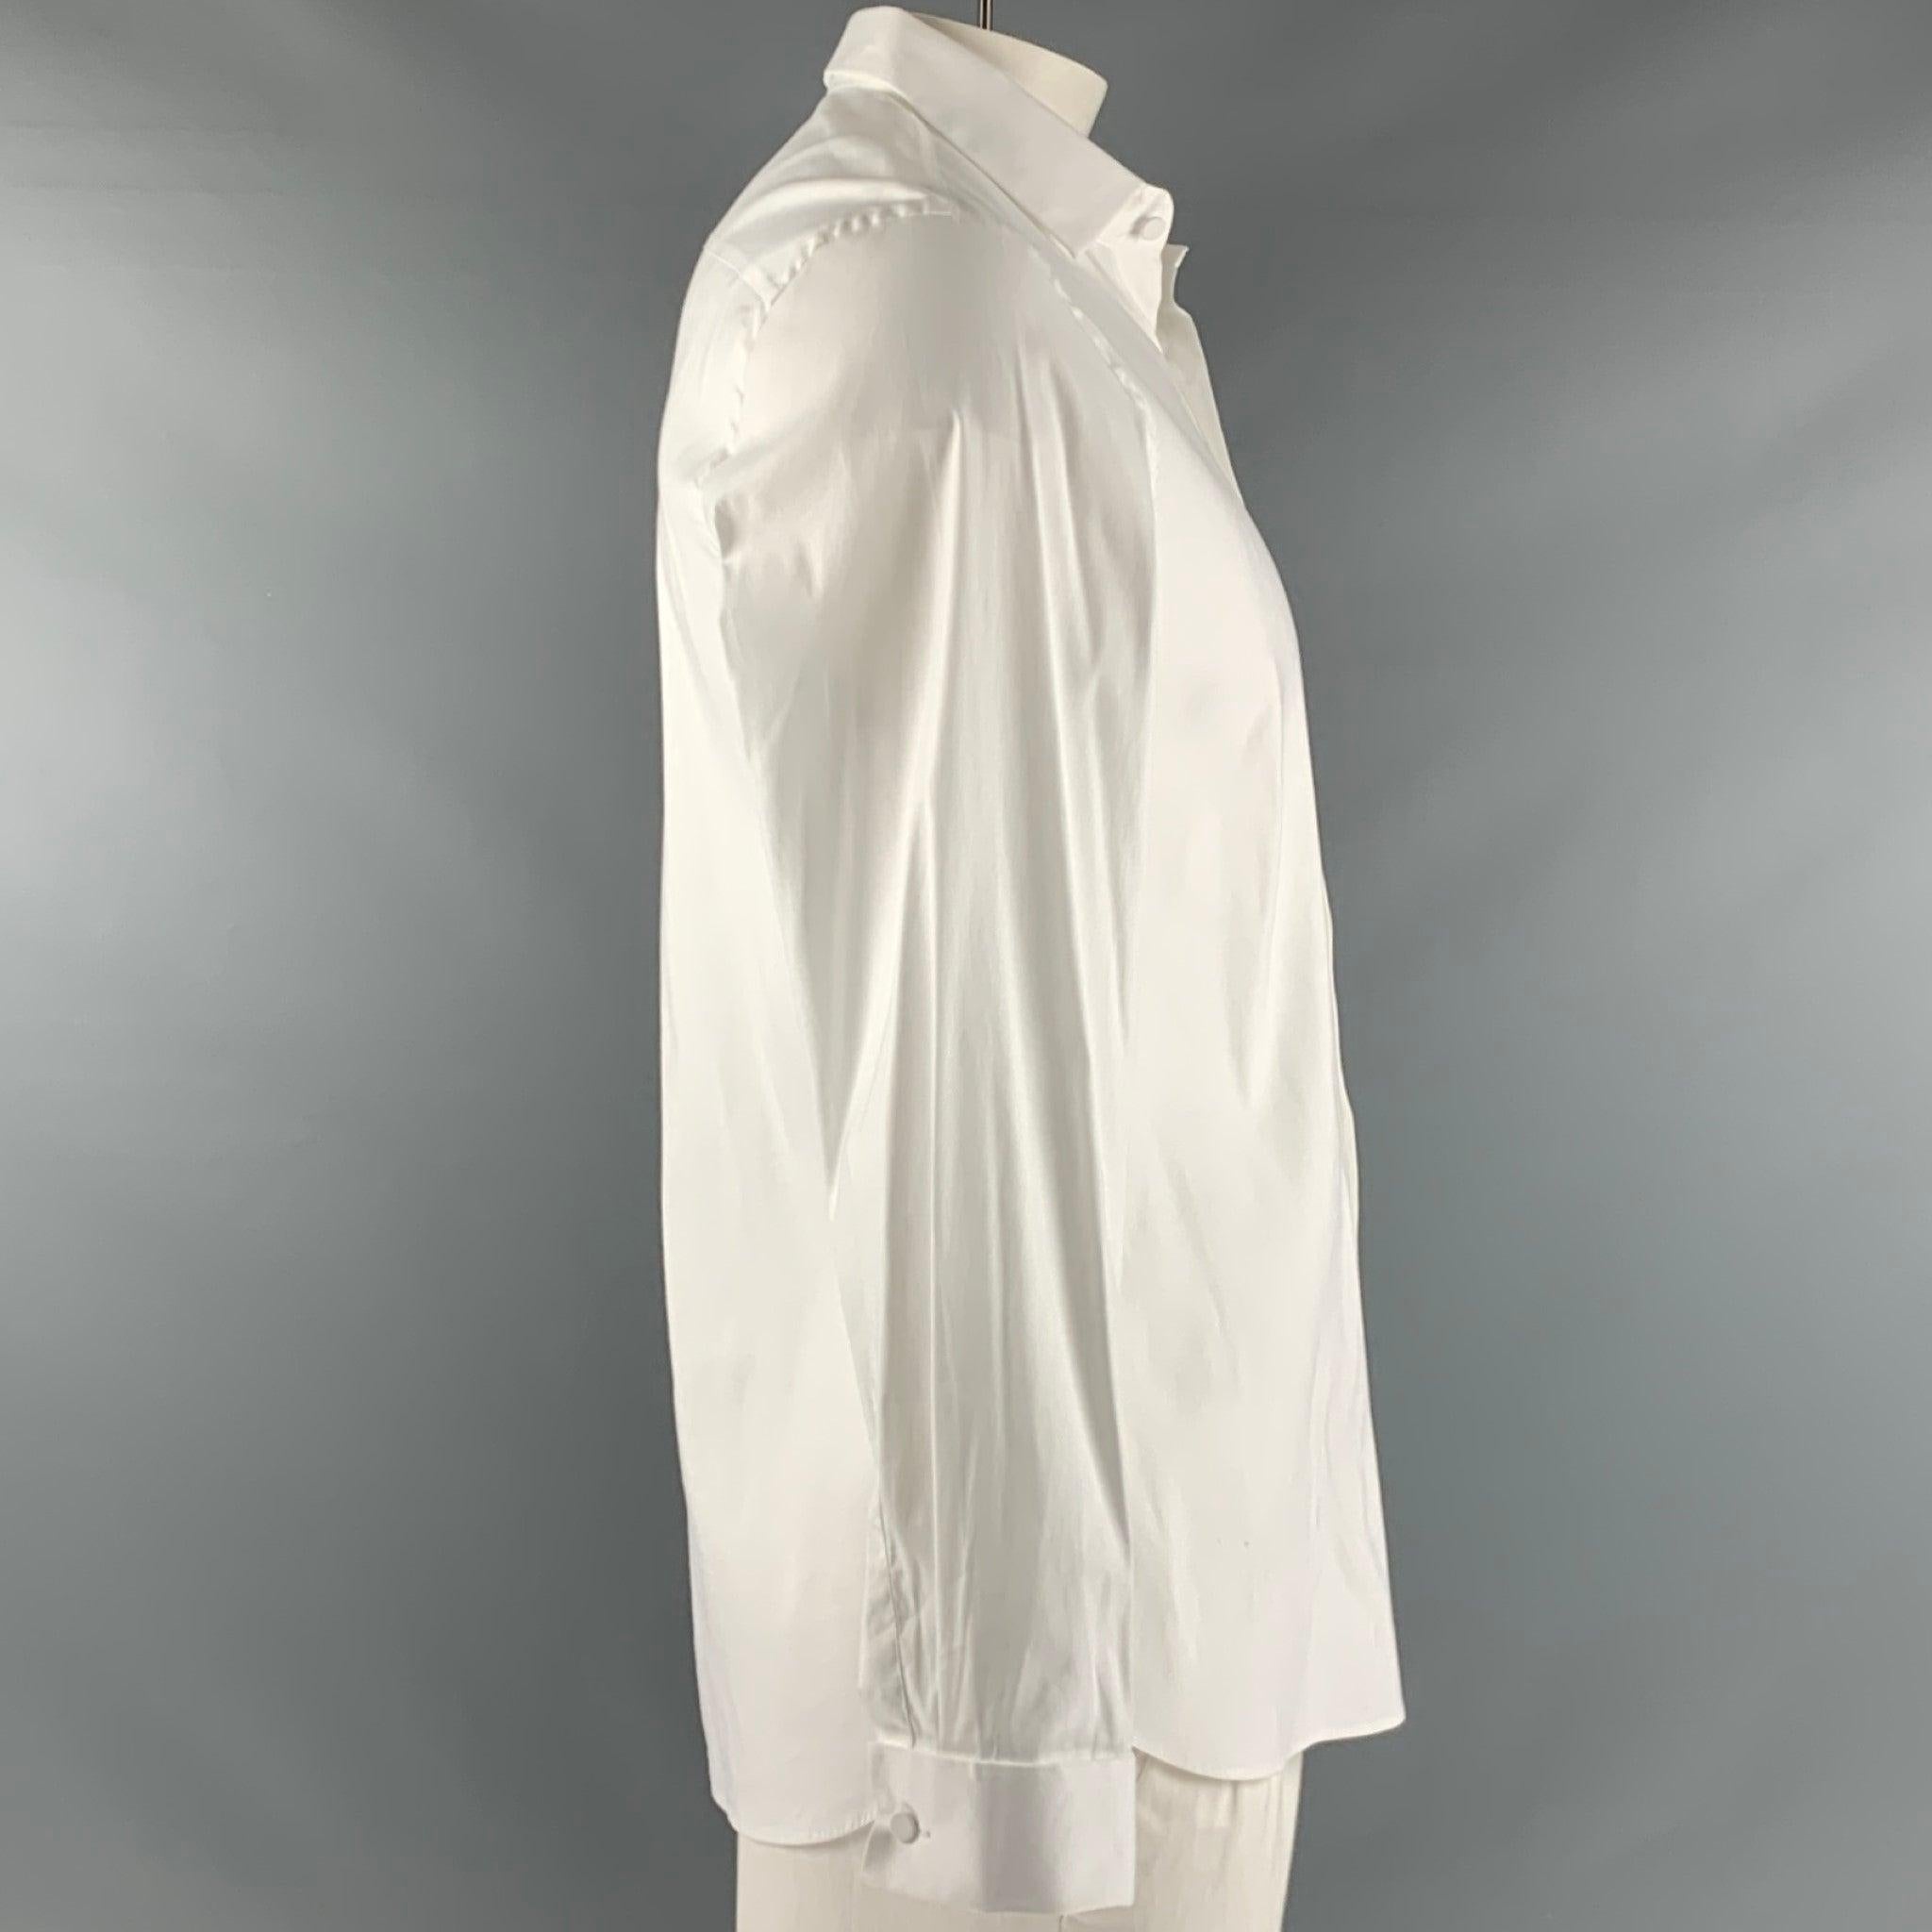 PRADA
Langarmhemd aus weißer Baumwollmischung mit französischen Manschetten, breitem Kragen und Knopfverschluss. Made in Italy. sehr guter gebrauchter Zustand. Leichte Gebrauchsspuren. 

Markiert:   42/16.5 

Abmessungen: 
 
Schultern: 18 Zoll